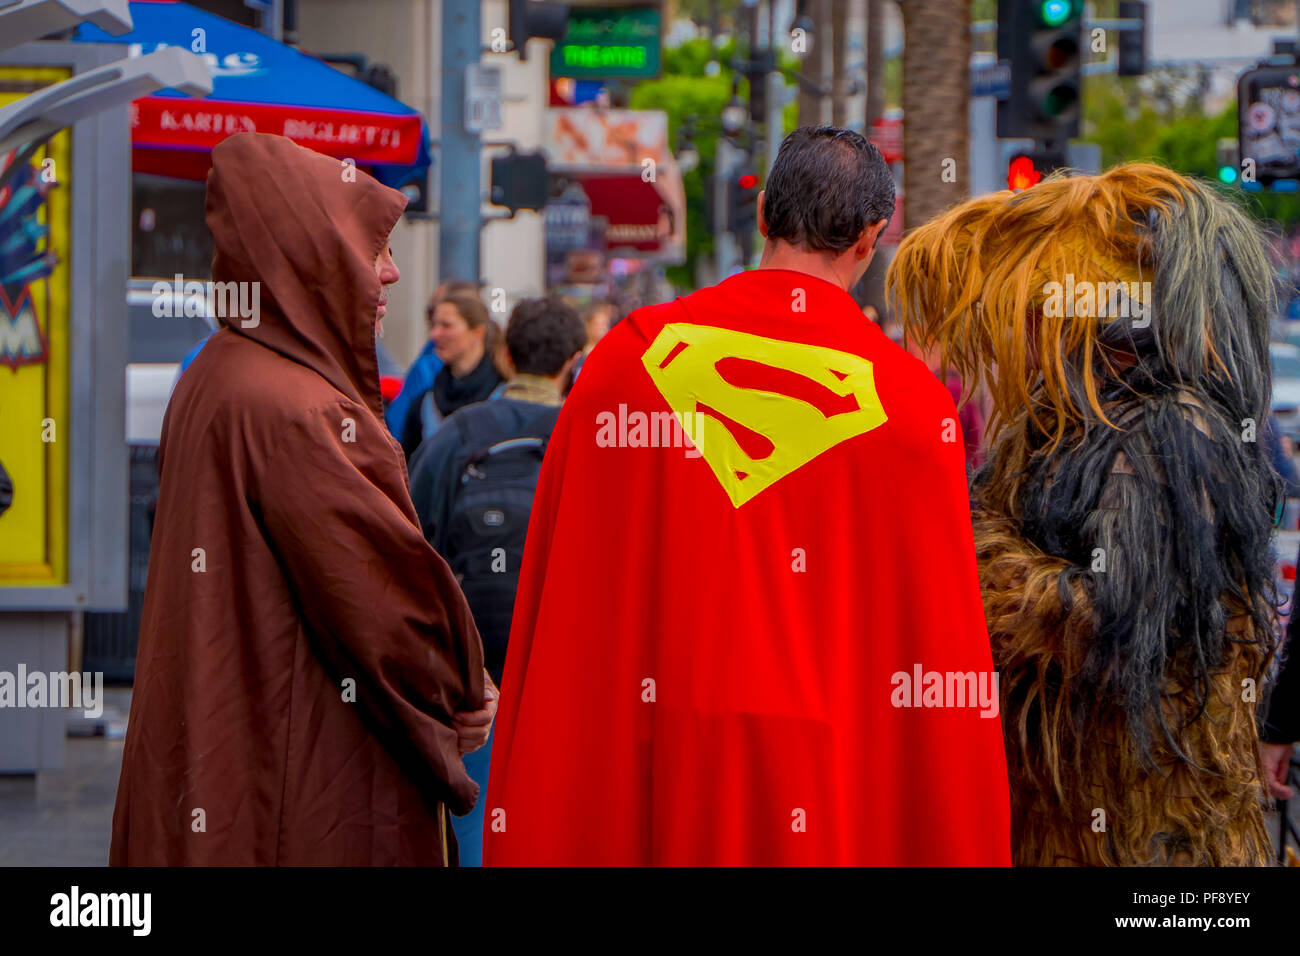 Los Angeles, California, USA, Giugno 15, 2018: Outdoor View non identificato di persone che indossano costumi diversi, un superman, Chewbecca e jedi per le strade di Los Angeles a Hollywood Foto Stock